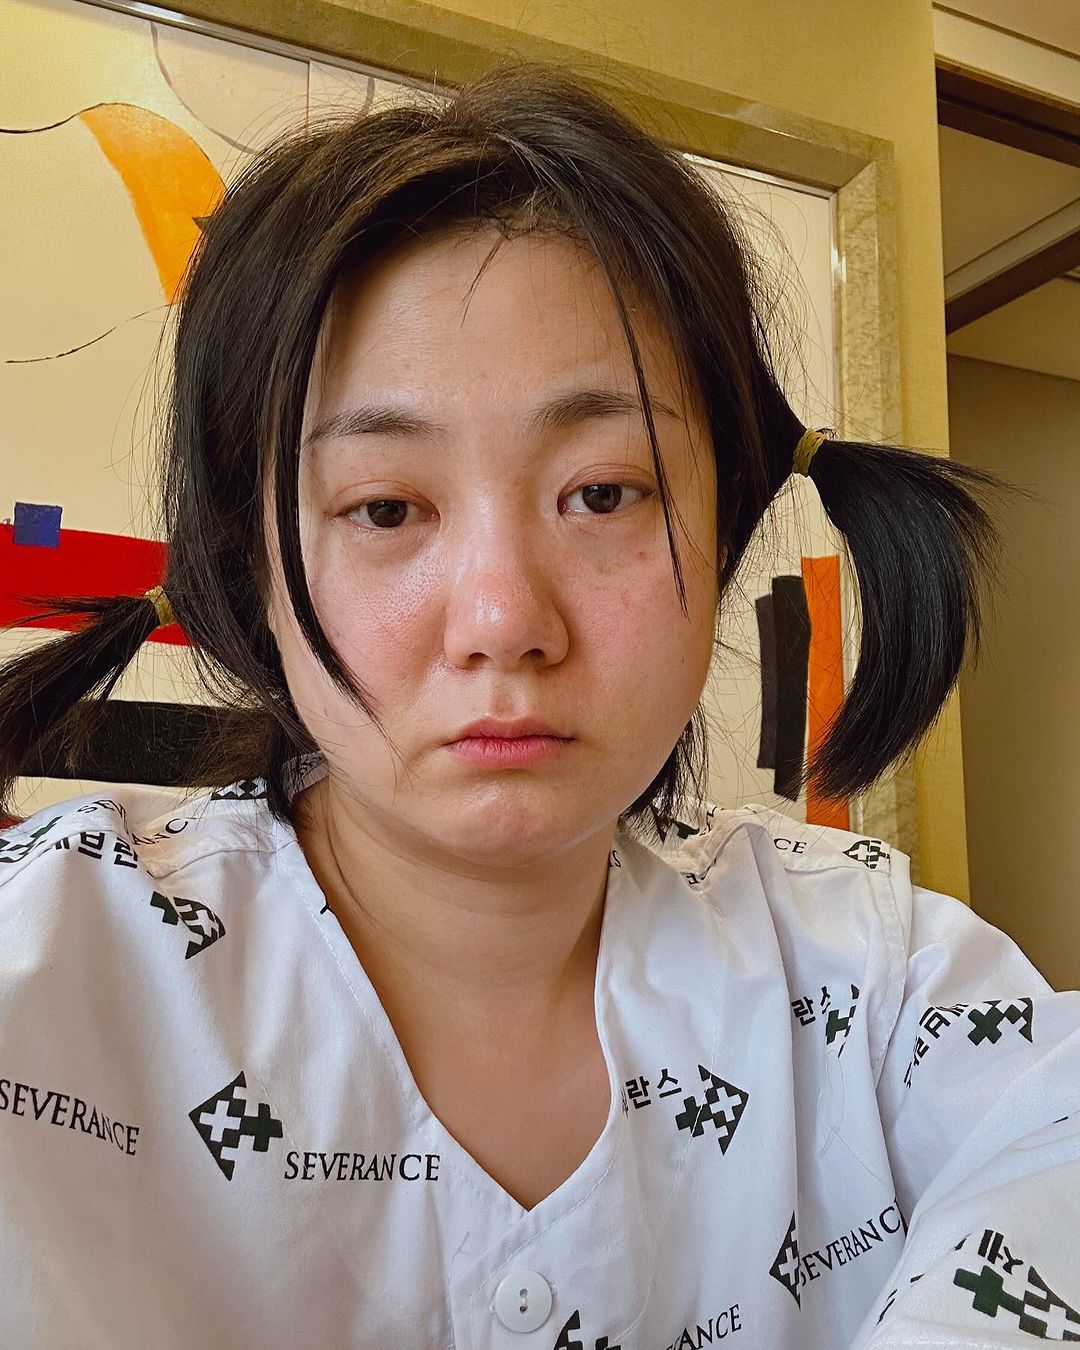 '긴급 수술'로 방송까지 불참한 박나래, 환자복 입은 채 심각한 표정의 근황 (전문)